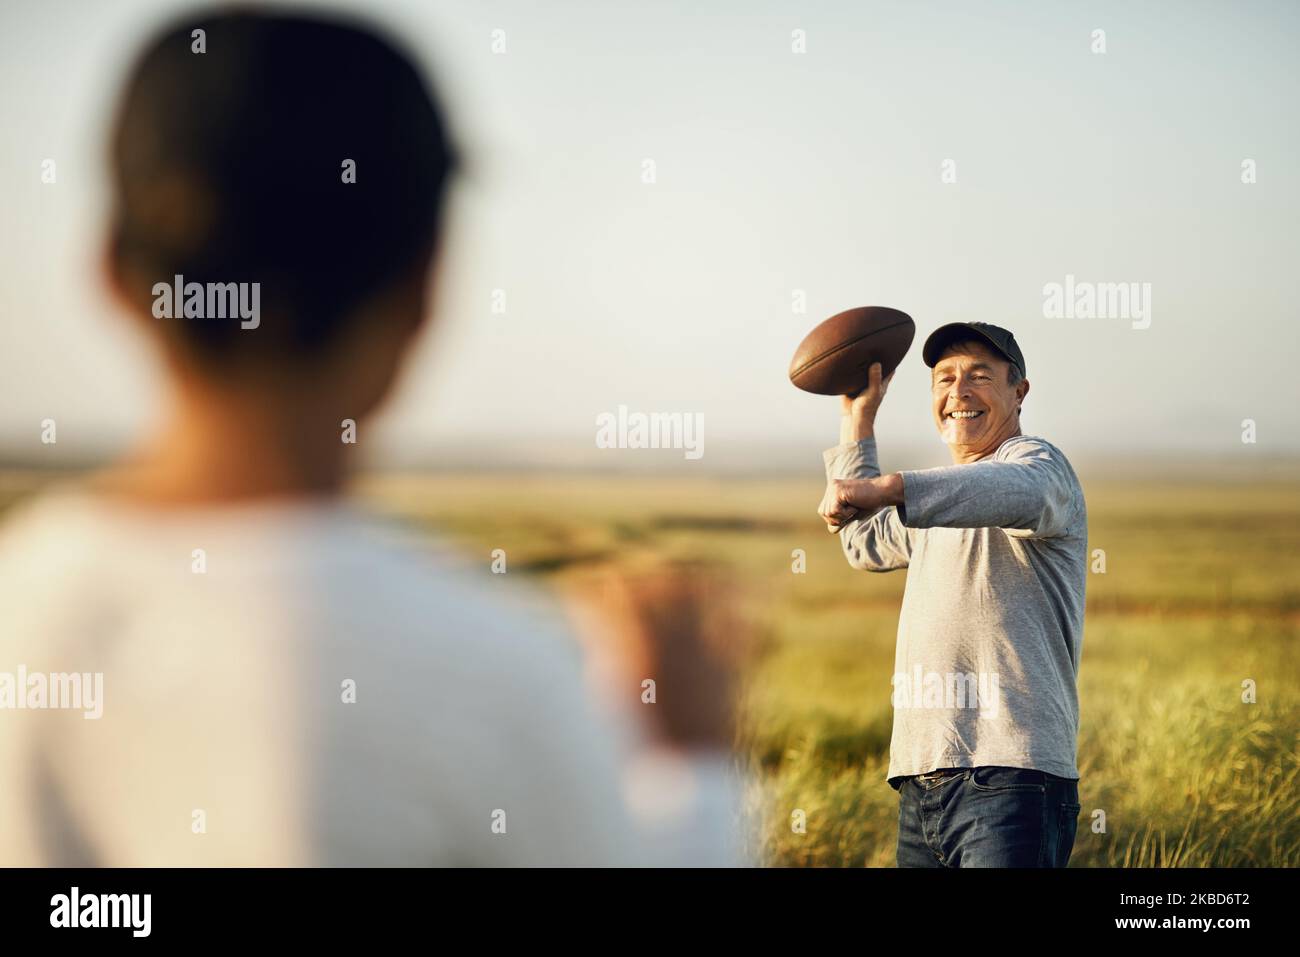 Wir lieben das Spiel. Vater und Sohn spielen Fußball auf einem offenen Feld. Stockfoto